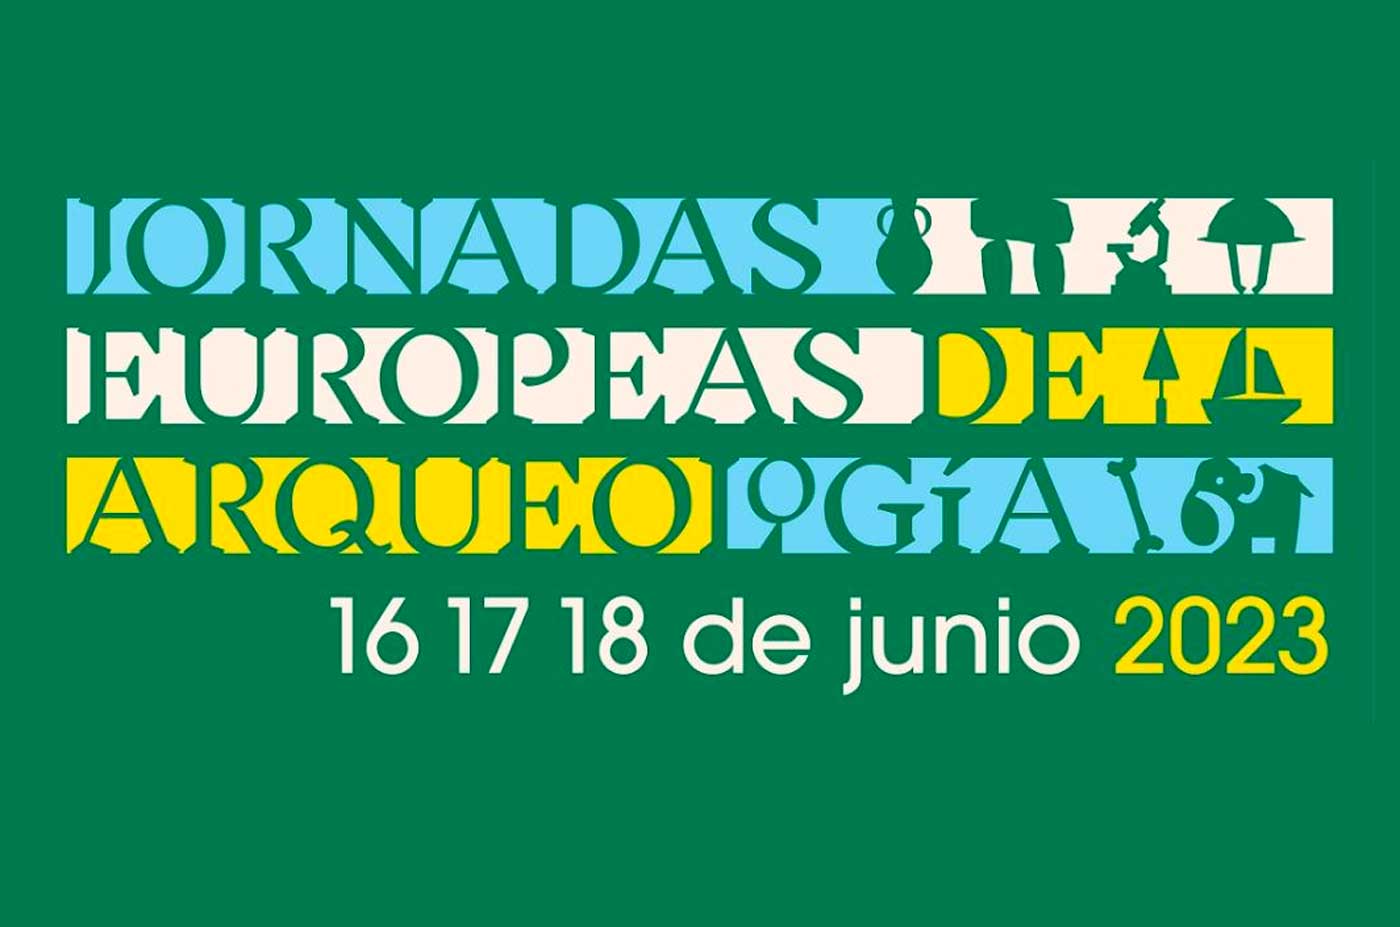 Jornadas Europeas de Arqueologia 2023 del 16 al 18 de junio